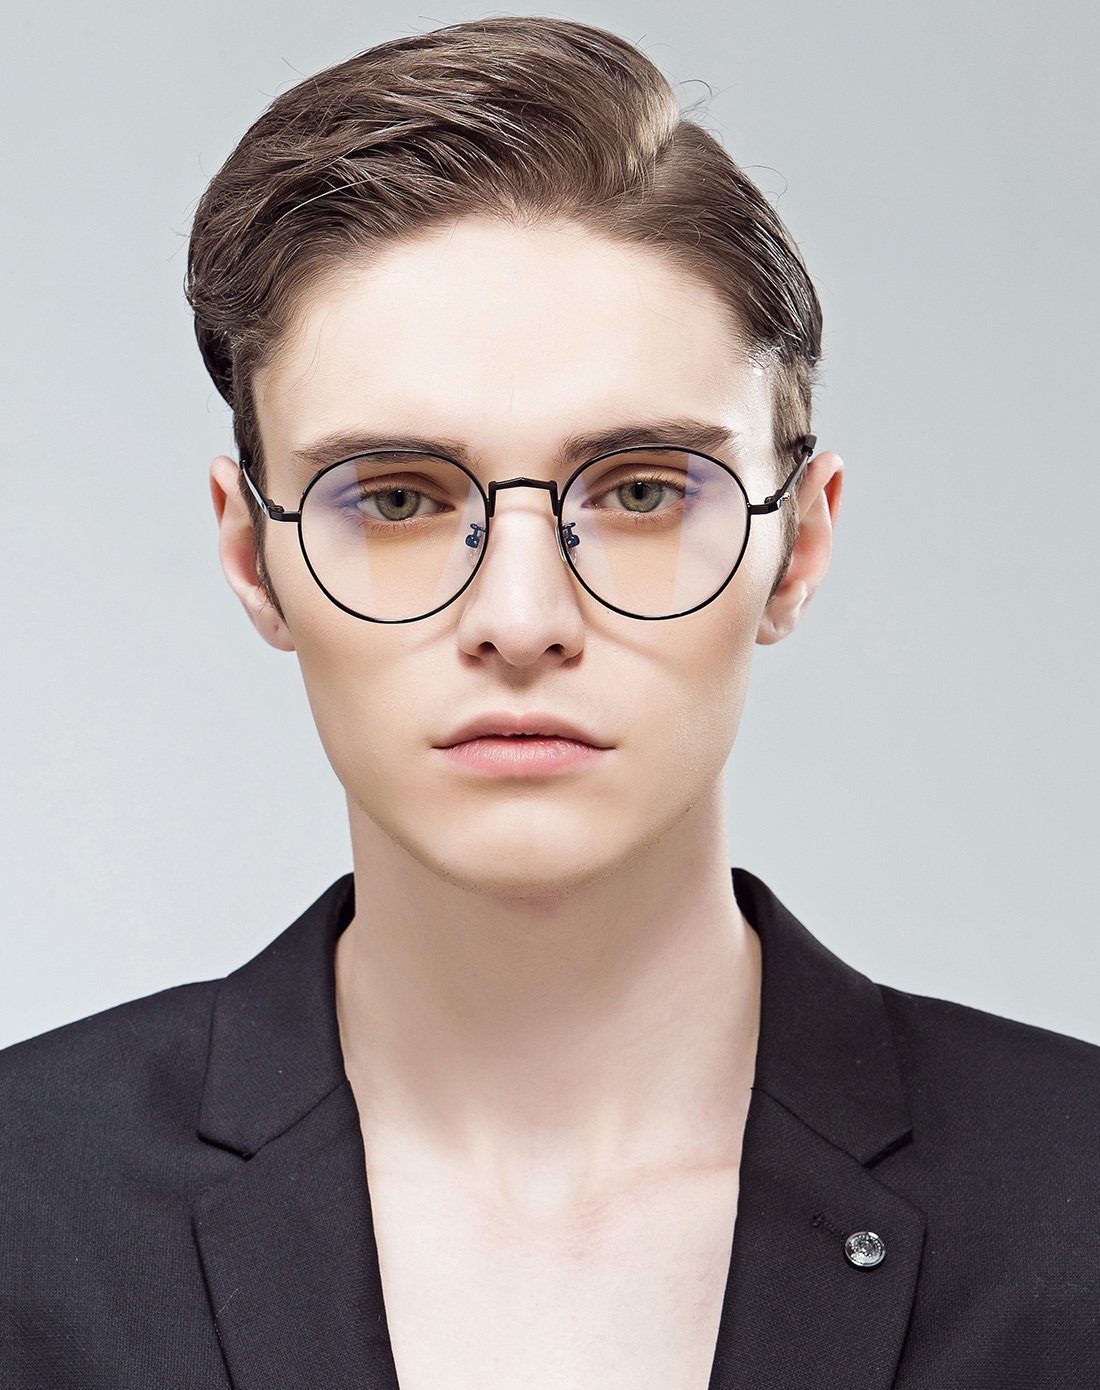 卡仕曼眼镜复古简约男士眼镜休闲近视眼镜时尚流行款光学近视眼镜框cx